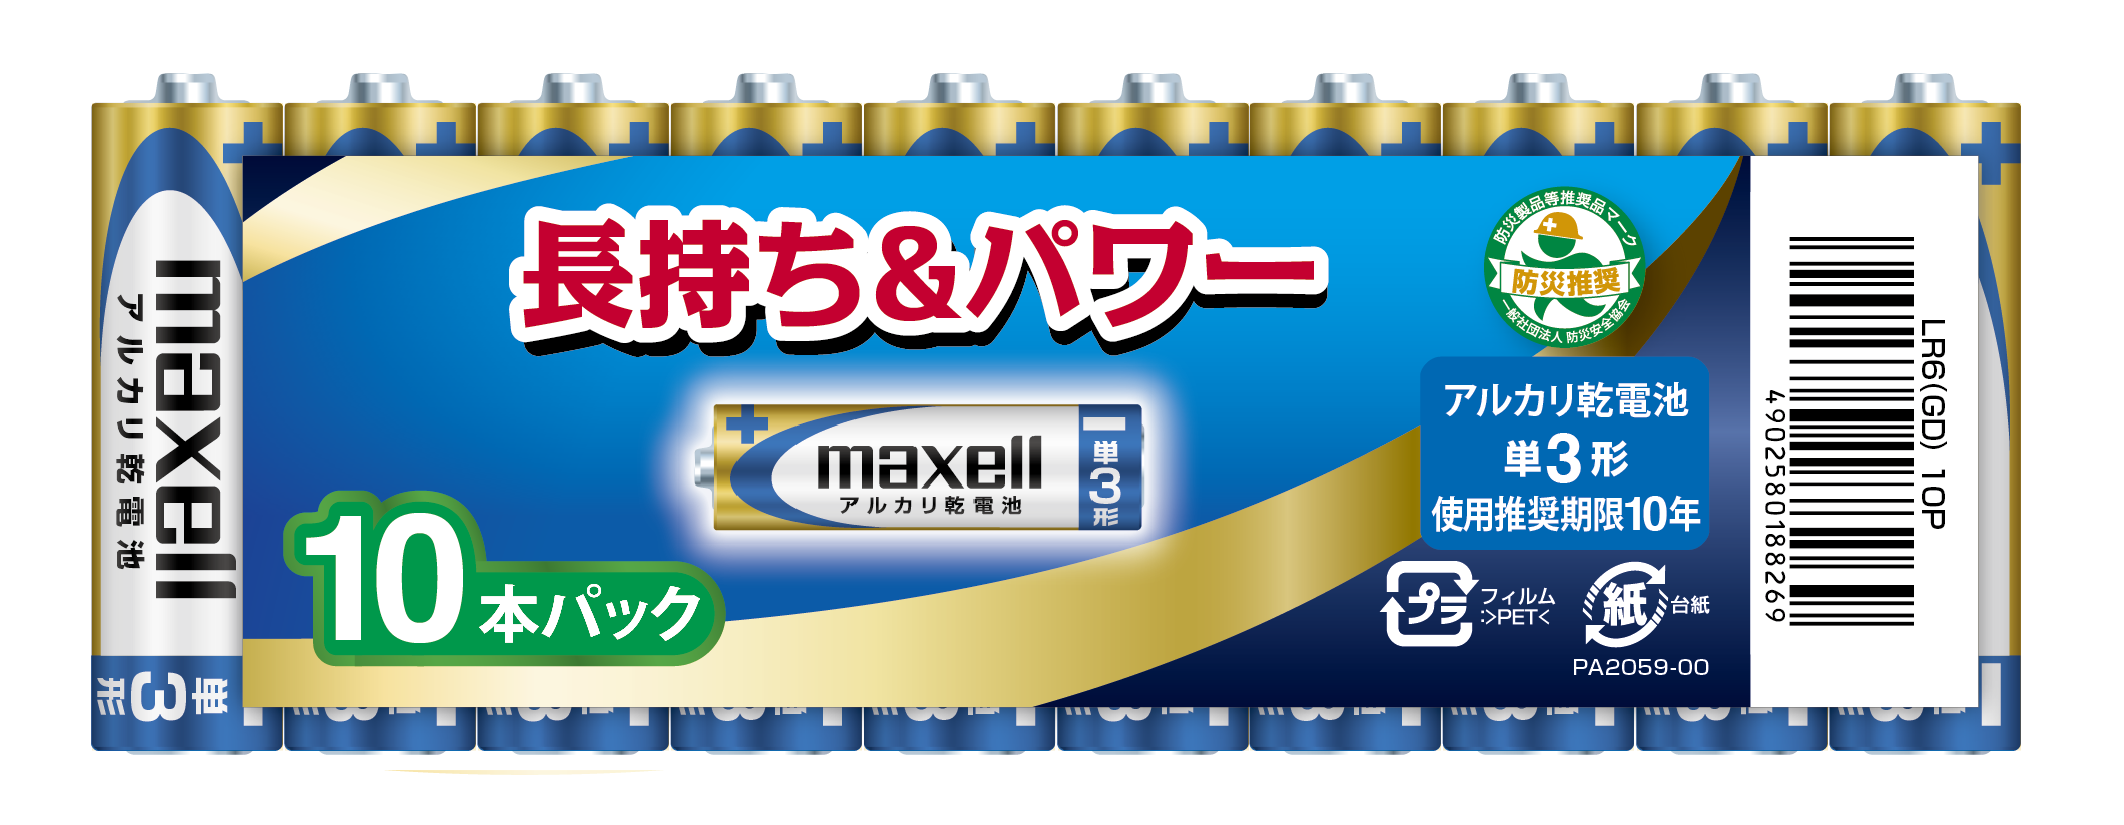 マクセル maxell アルカリ乾電池 単3形 (10本パック)  LR6(GD) 10P